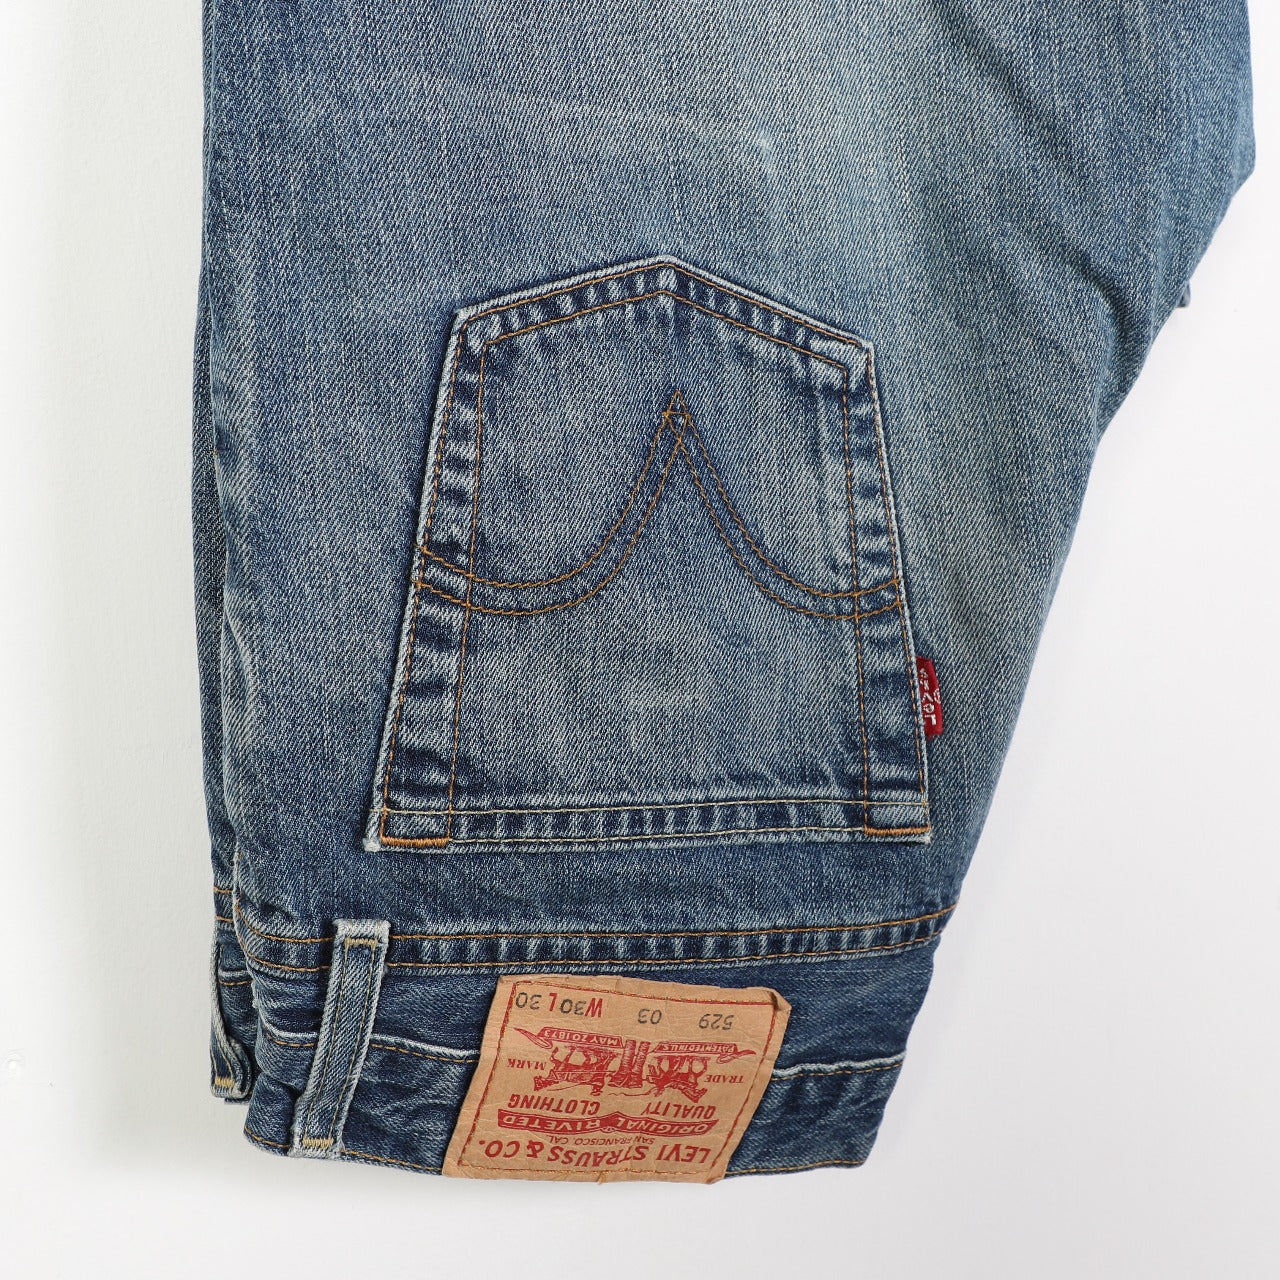 Vintage Levi's 529 Bootcut Jeans – 24 Black Vintage